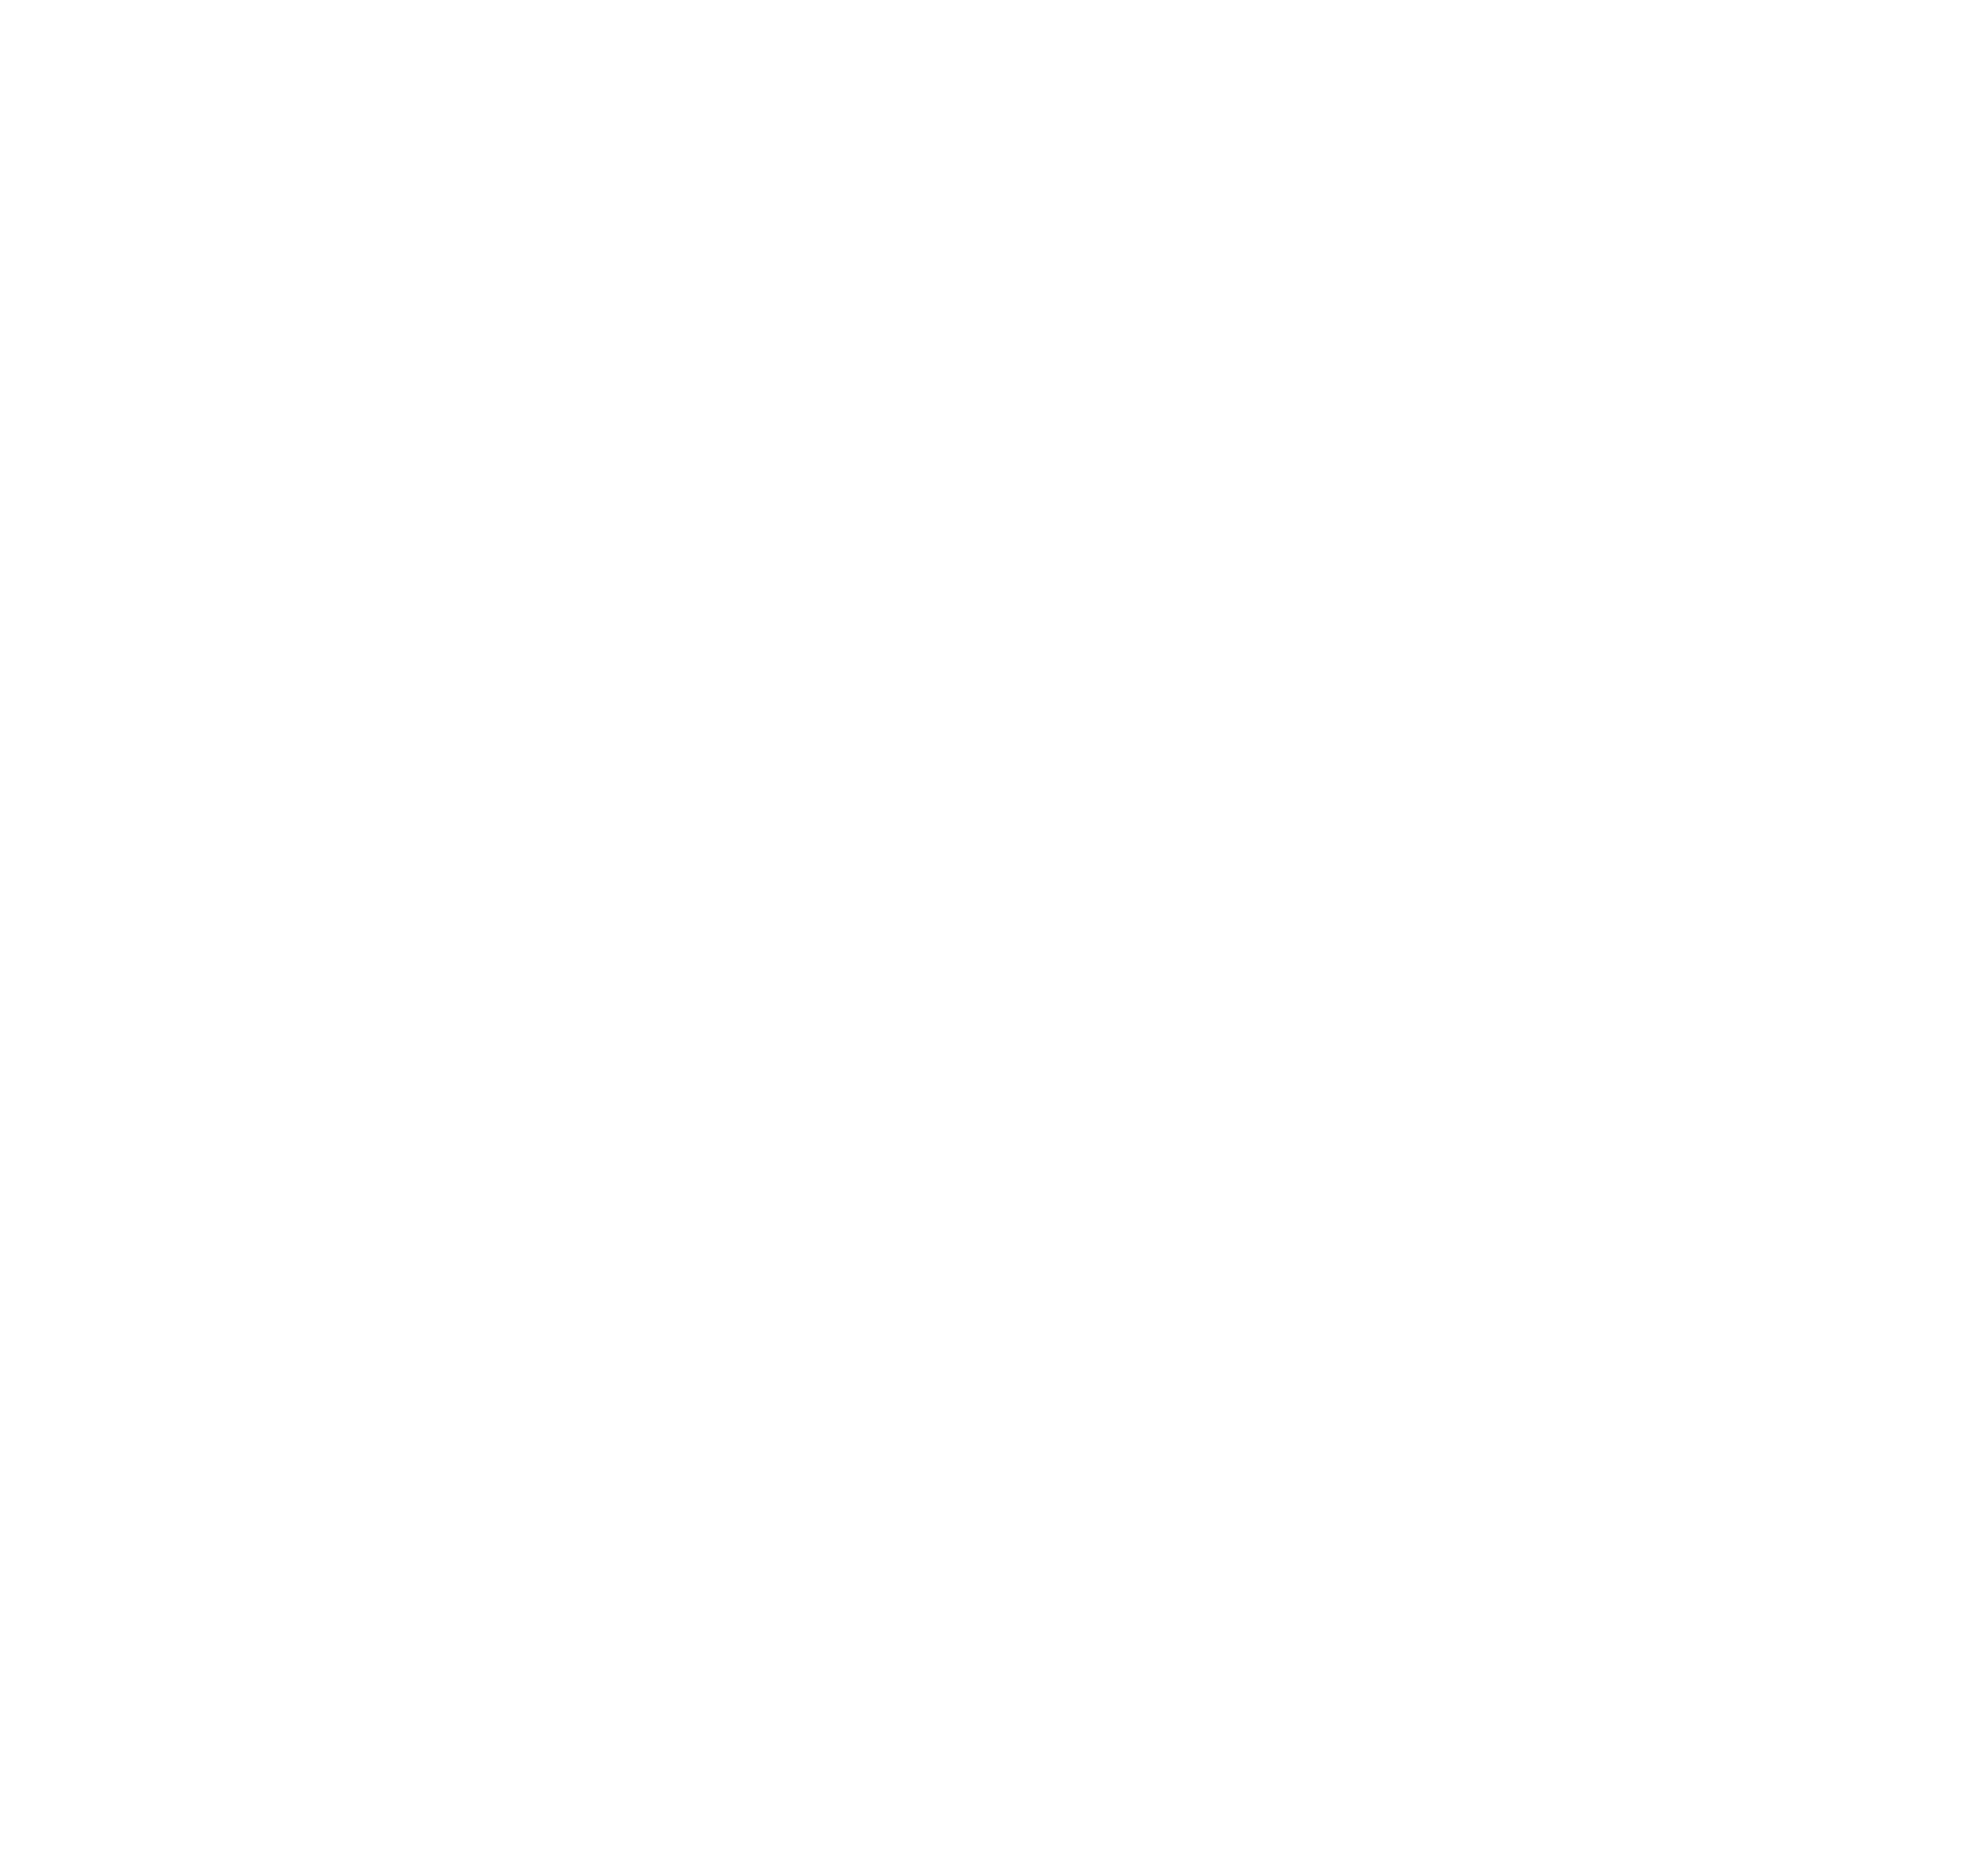 Neuronaukowiec.com